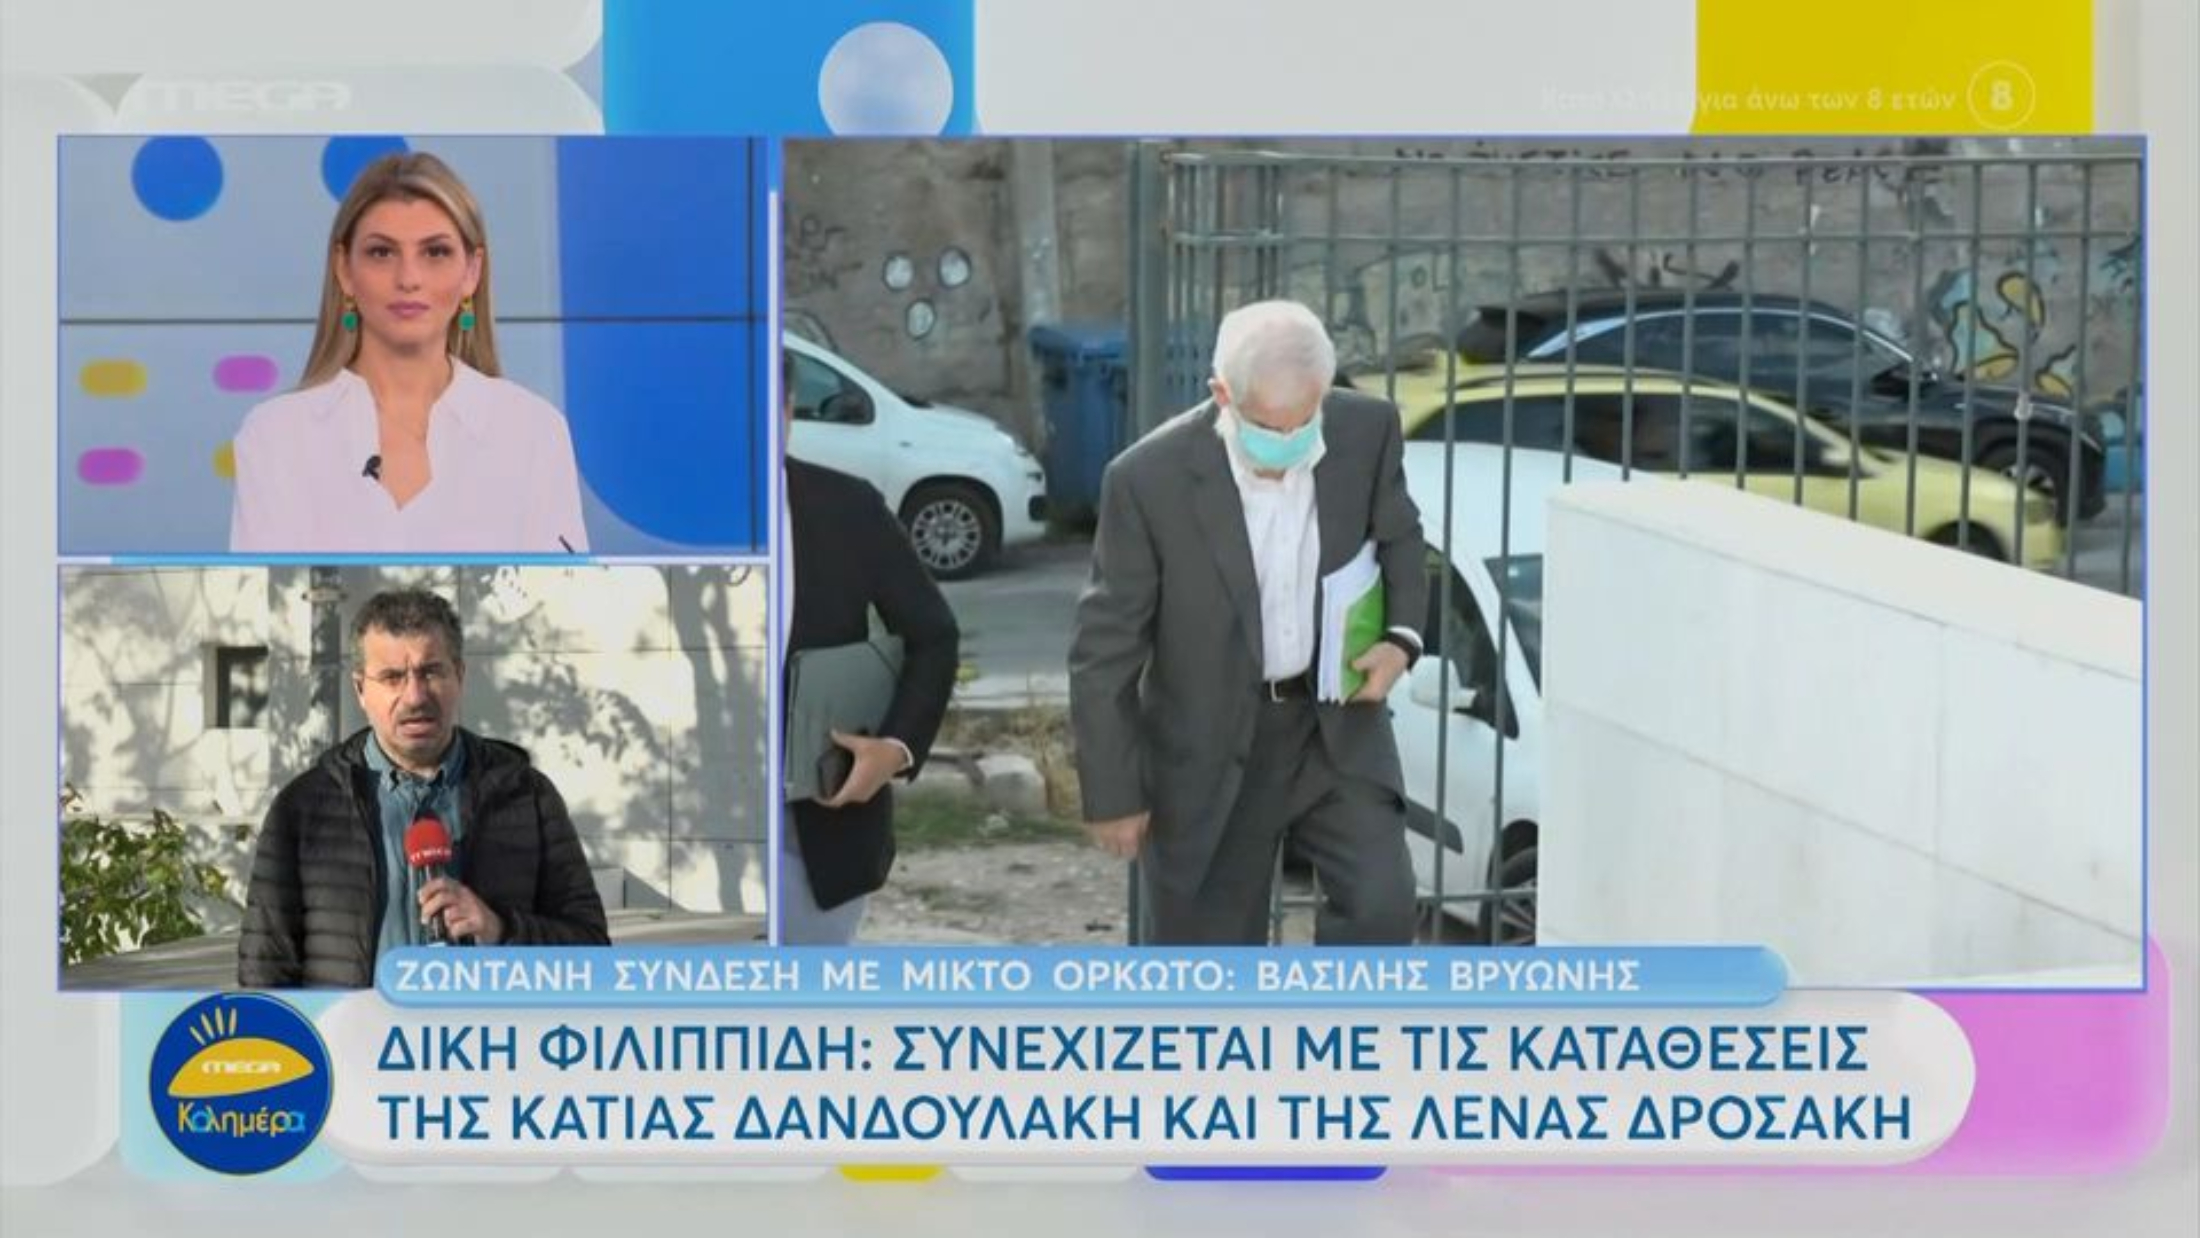 Πέτρος Φιλιππίδης: Συνεχίζεται η δίκη με τις καταθέσεις Δανδουλάκη-Δροσάκη (VIDEO)